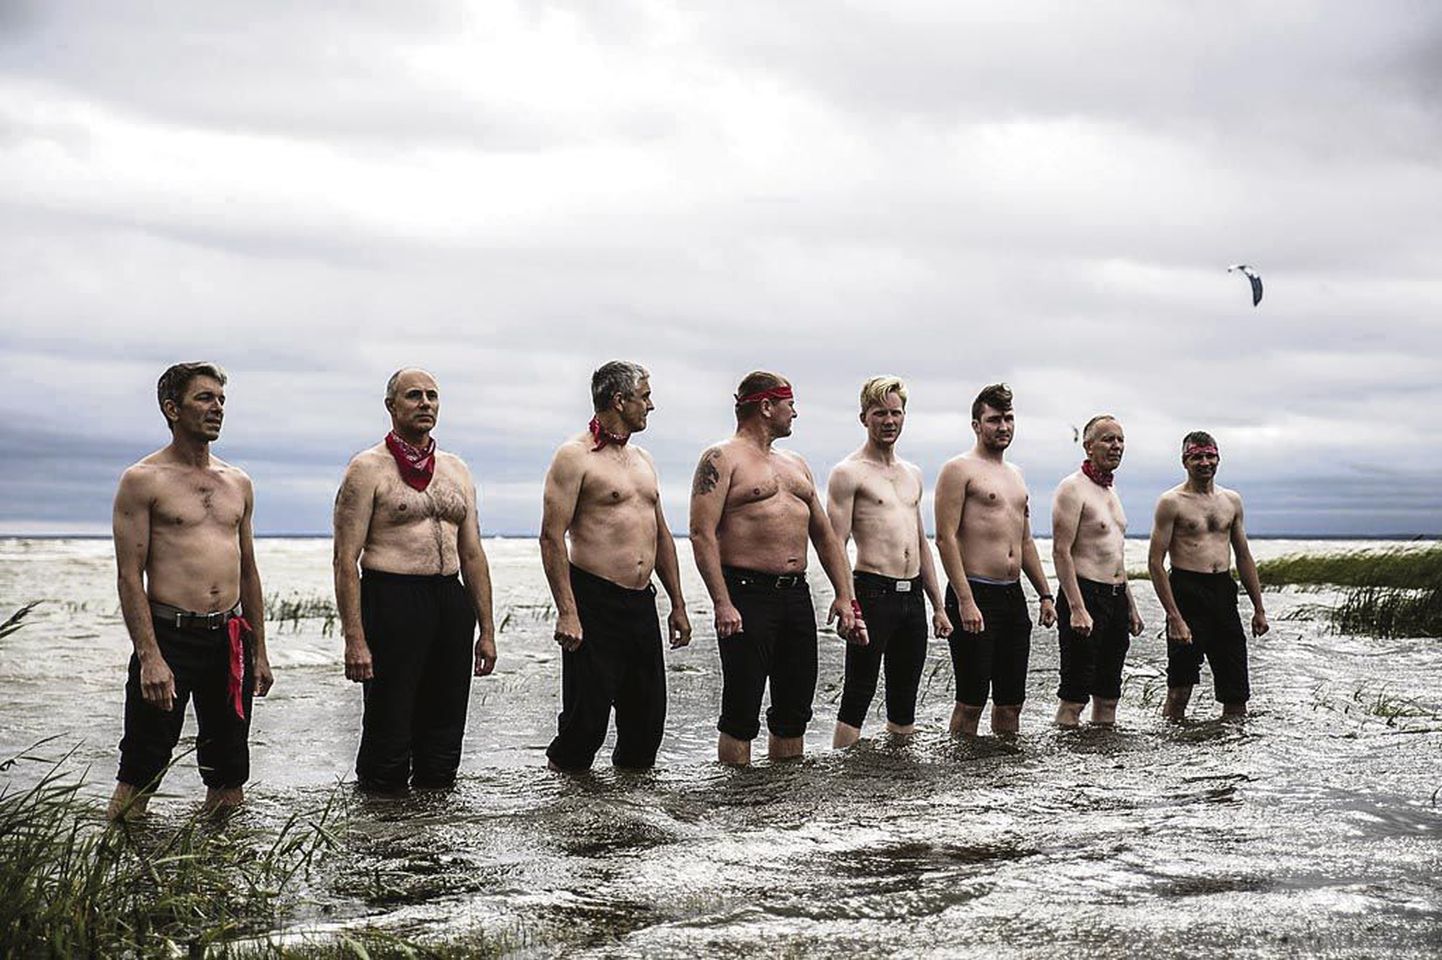 Lavastuses tantsib ja suhtleb merega 30 Eesti meest.